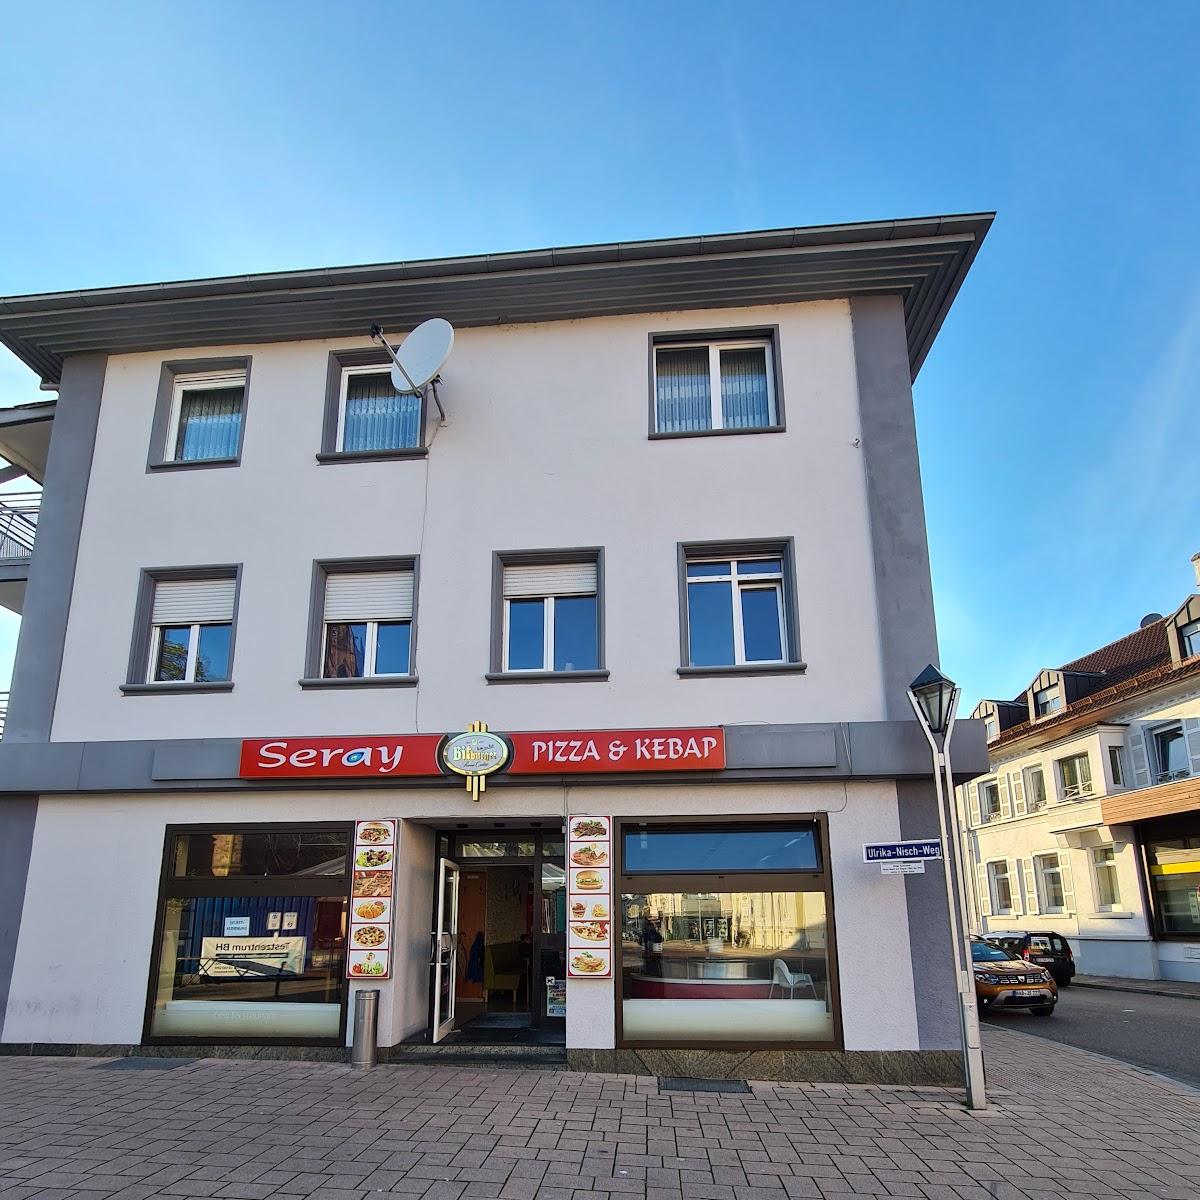 Restaurant "Seray Pizza & Kebap" in Bühl